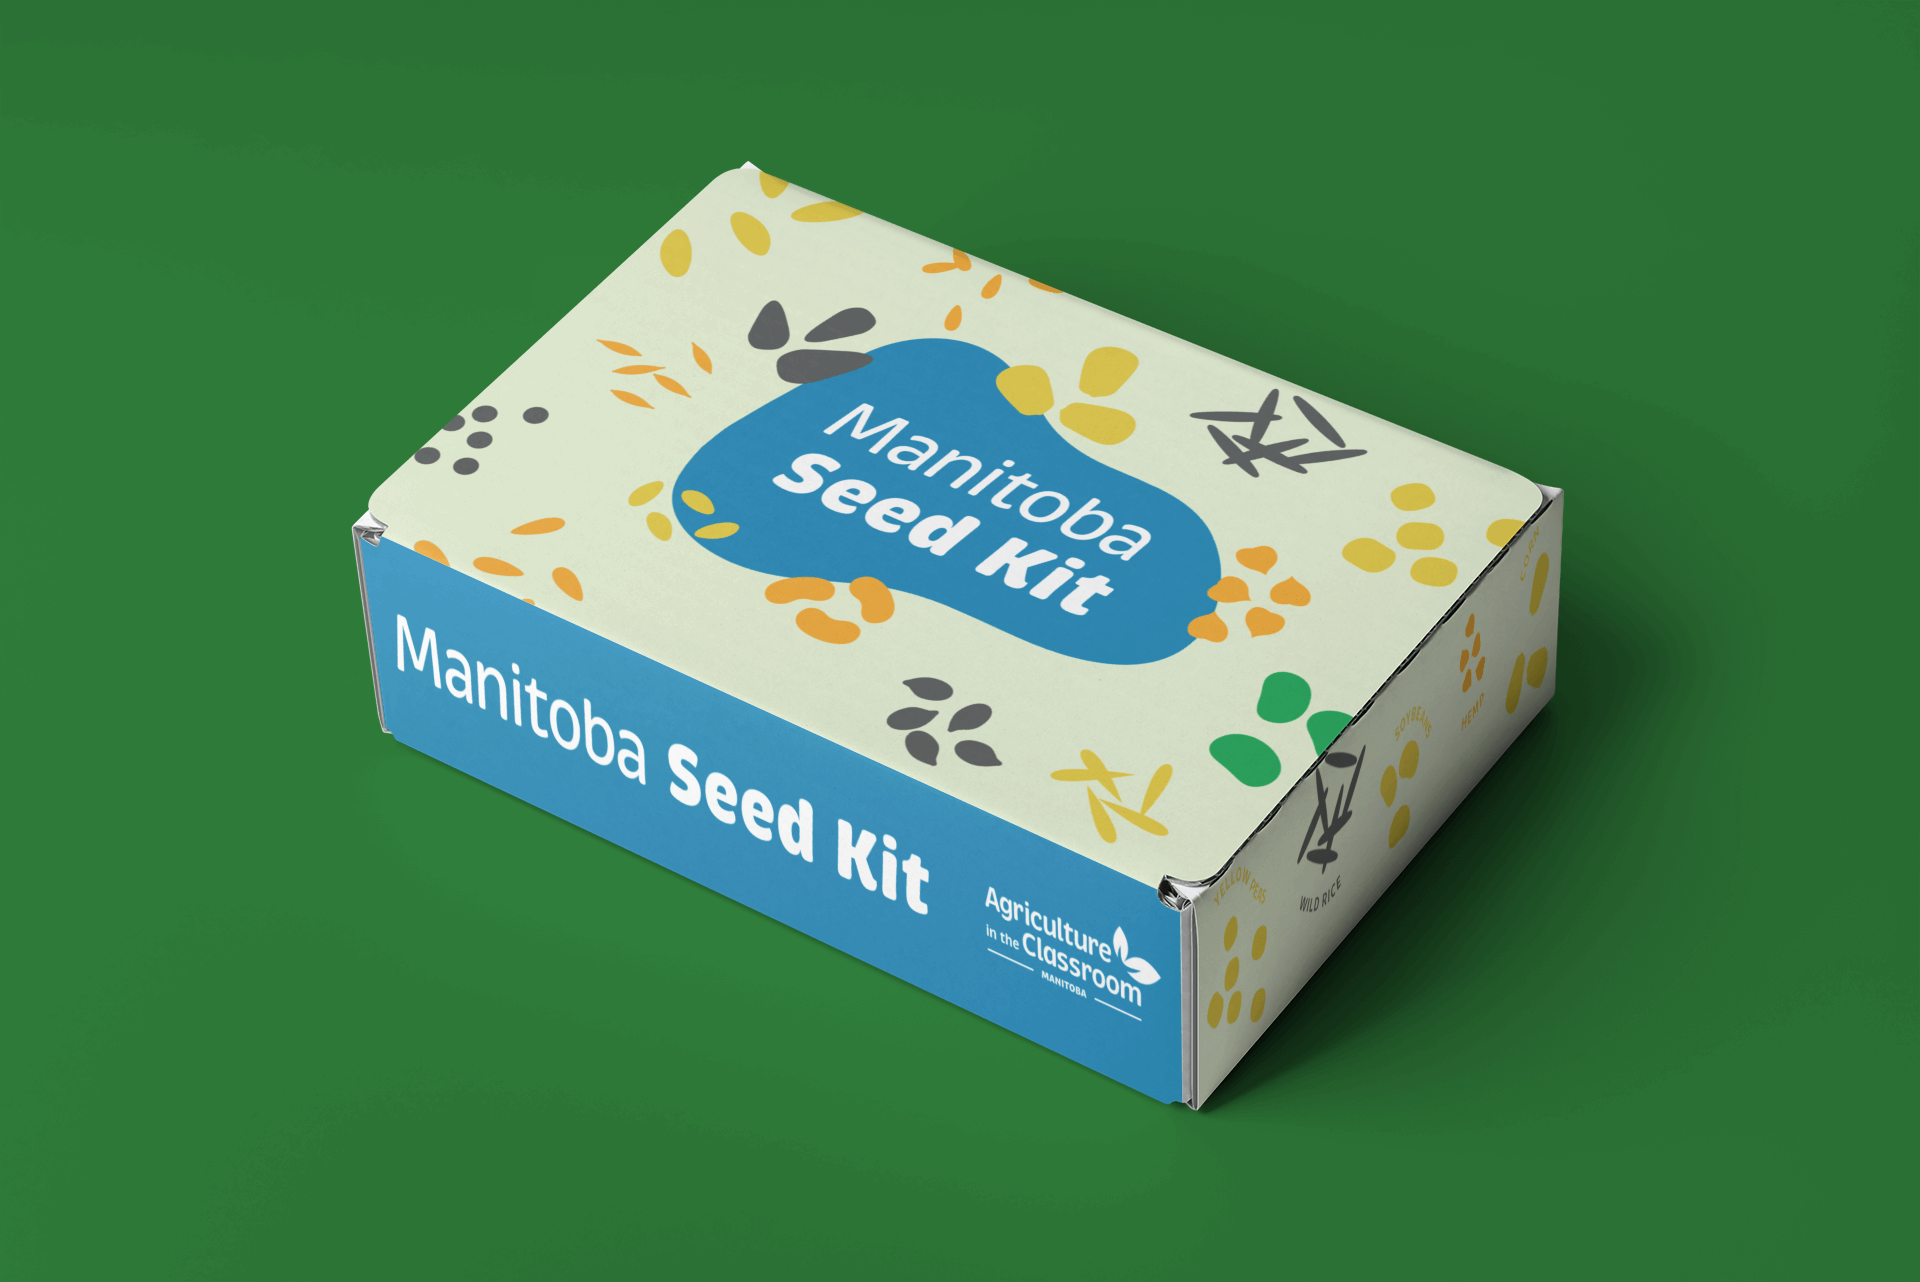 Seed kit box